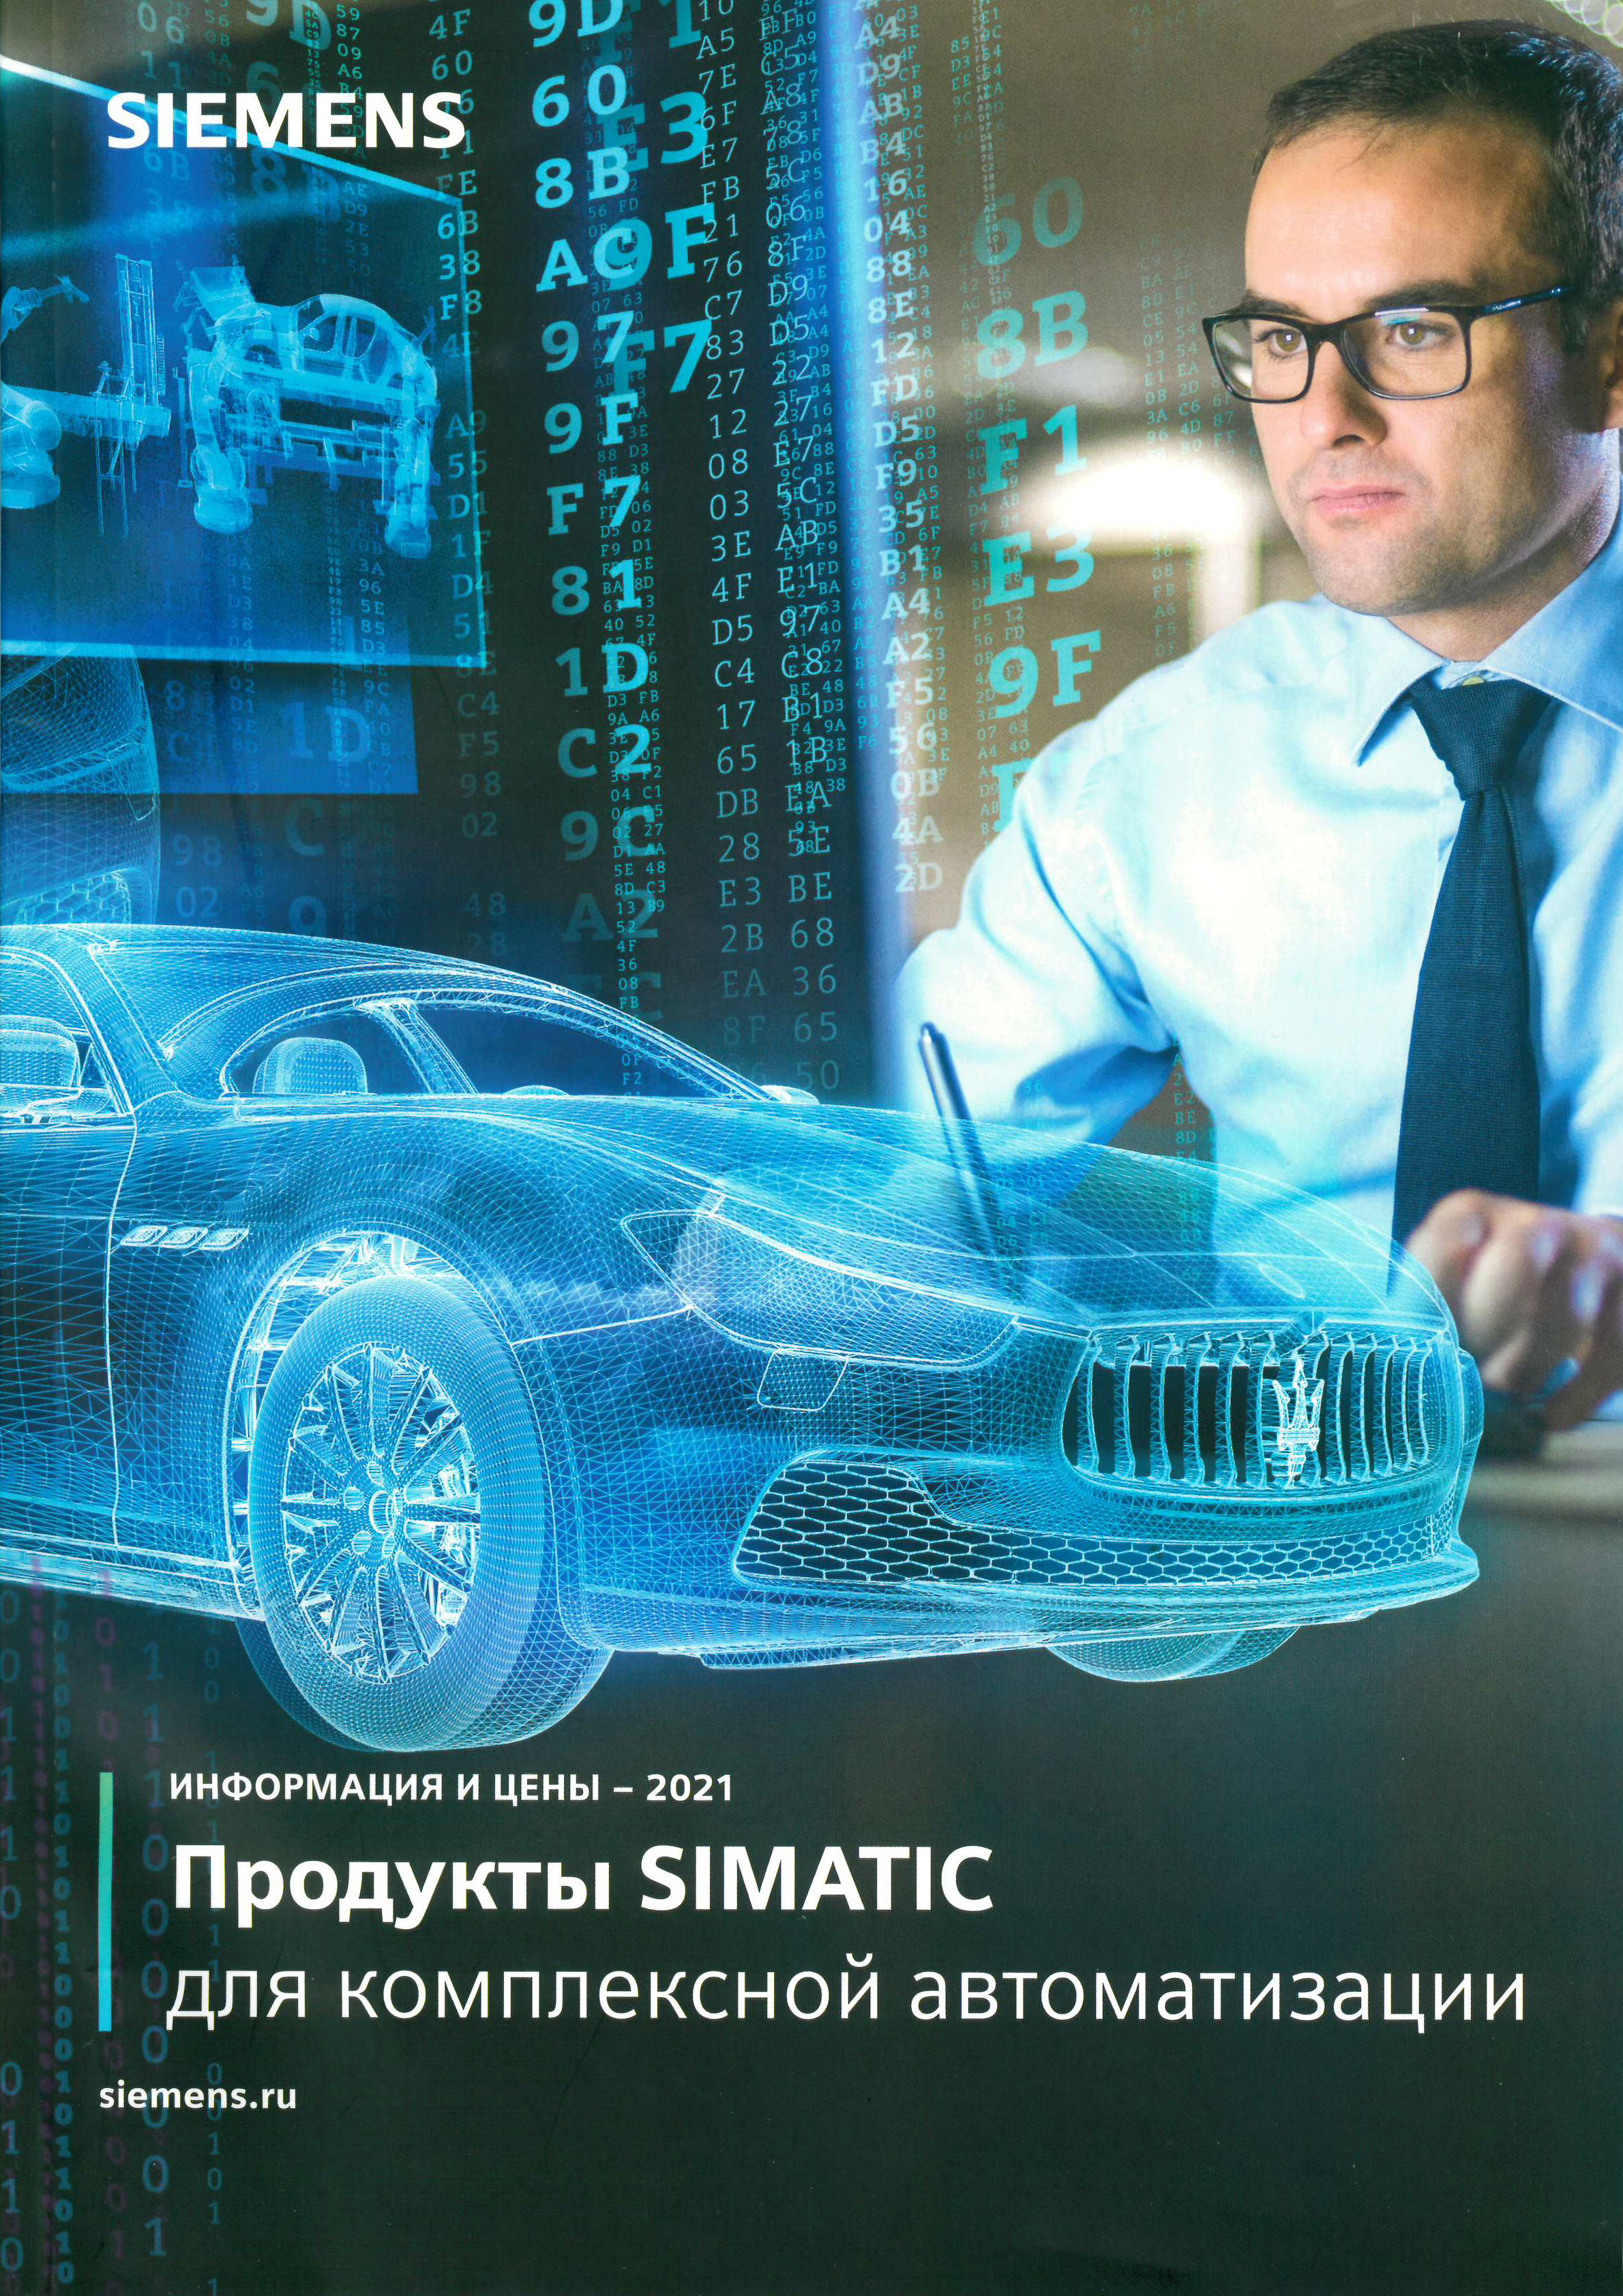 Каталог по продуктам SIMATIC 2021 года